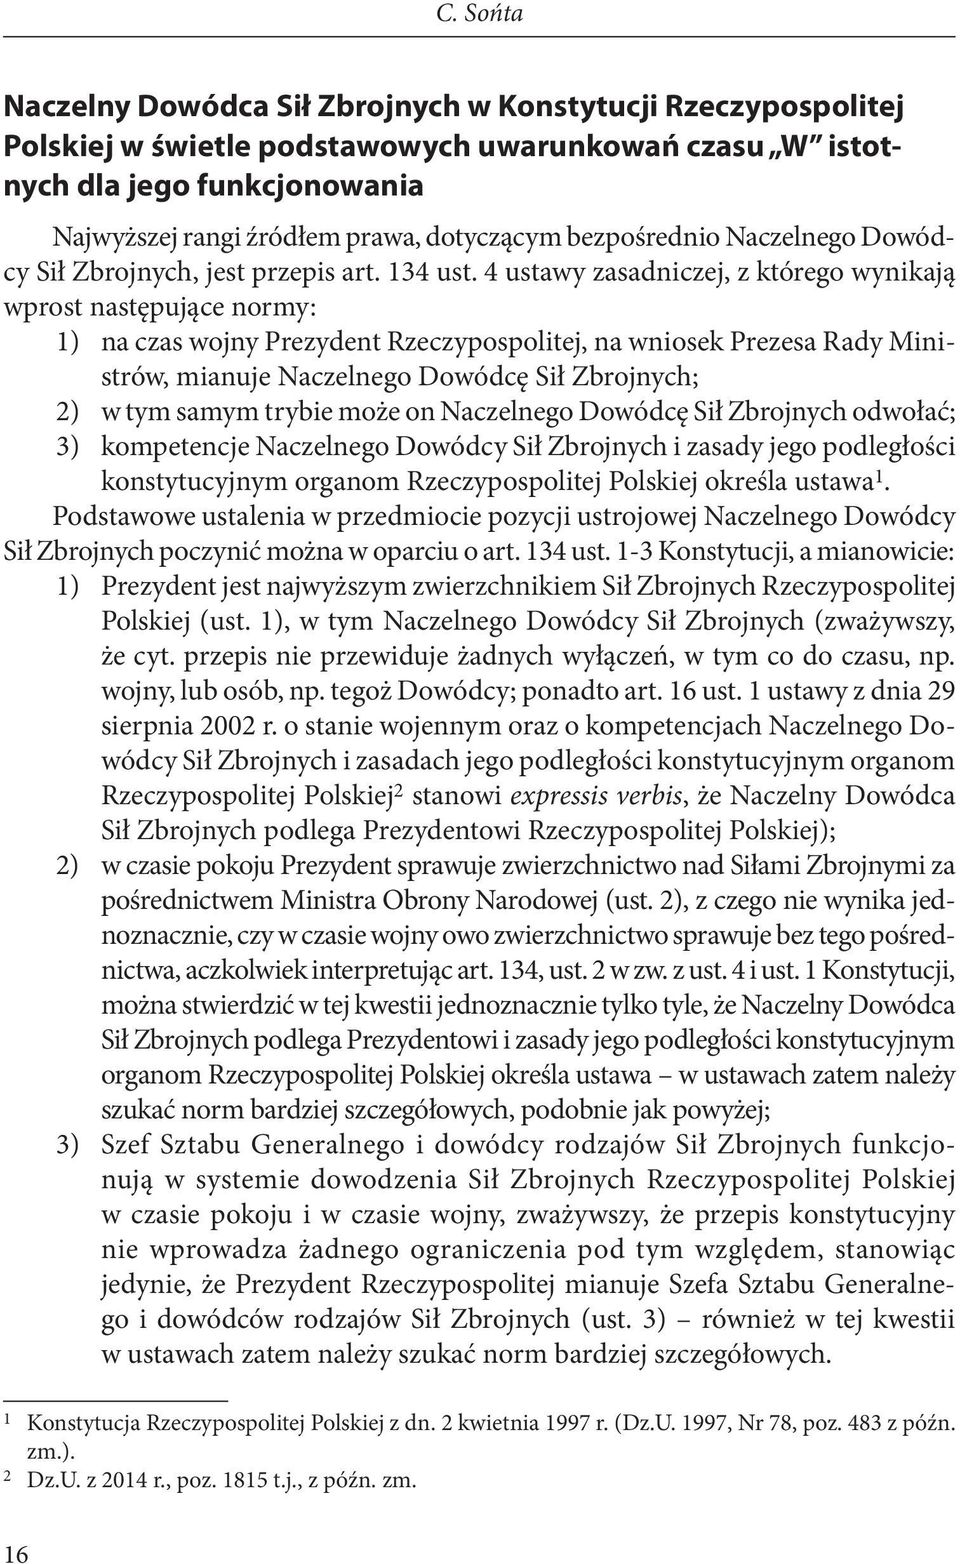 4 ustawy zasadniczej, z którego wynikają wprost następujące normy: 1) na czas wojny Prezydent Rzeczypospolitej, na wniosek Prezesa Rady Ministrów, mianuje Naczelnego Dowódcę Sił Zbrojnych; 2) w tym